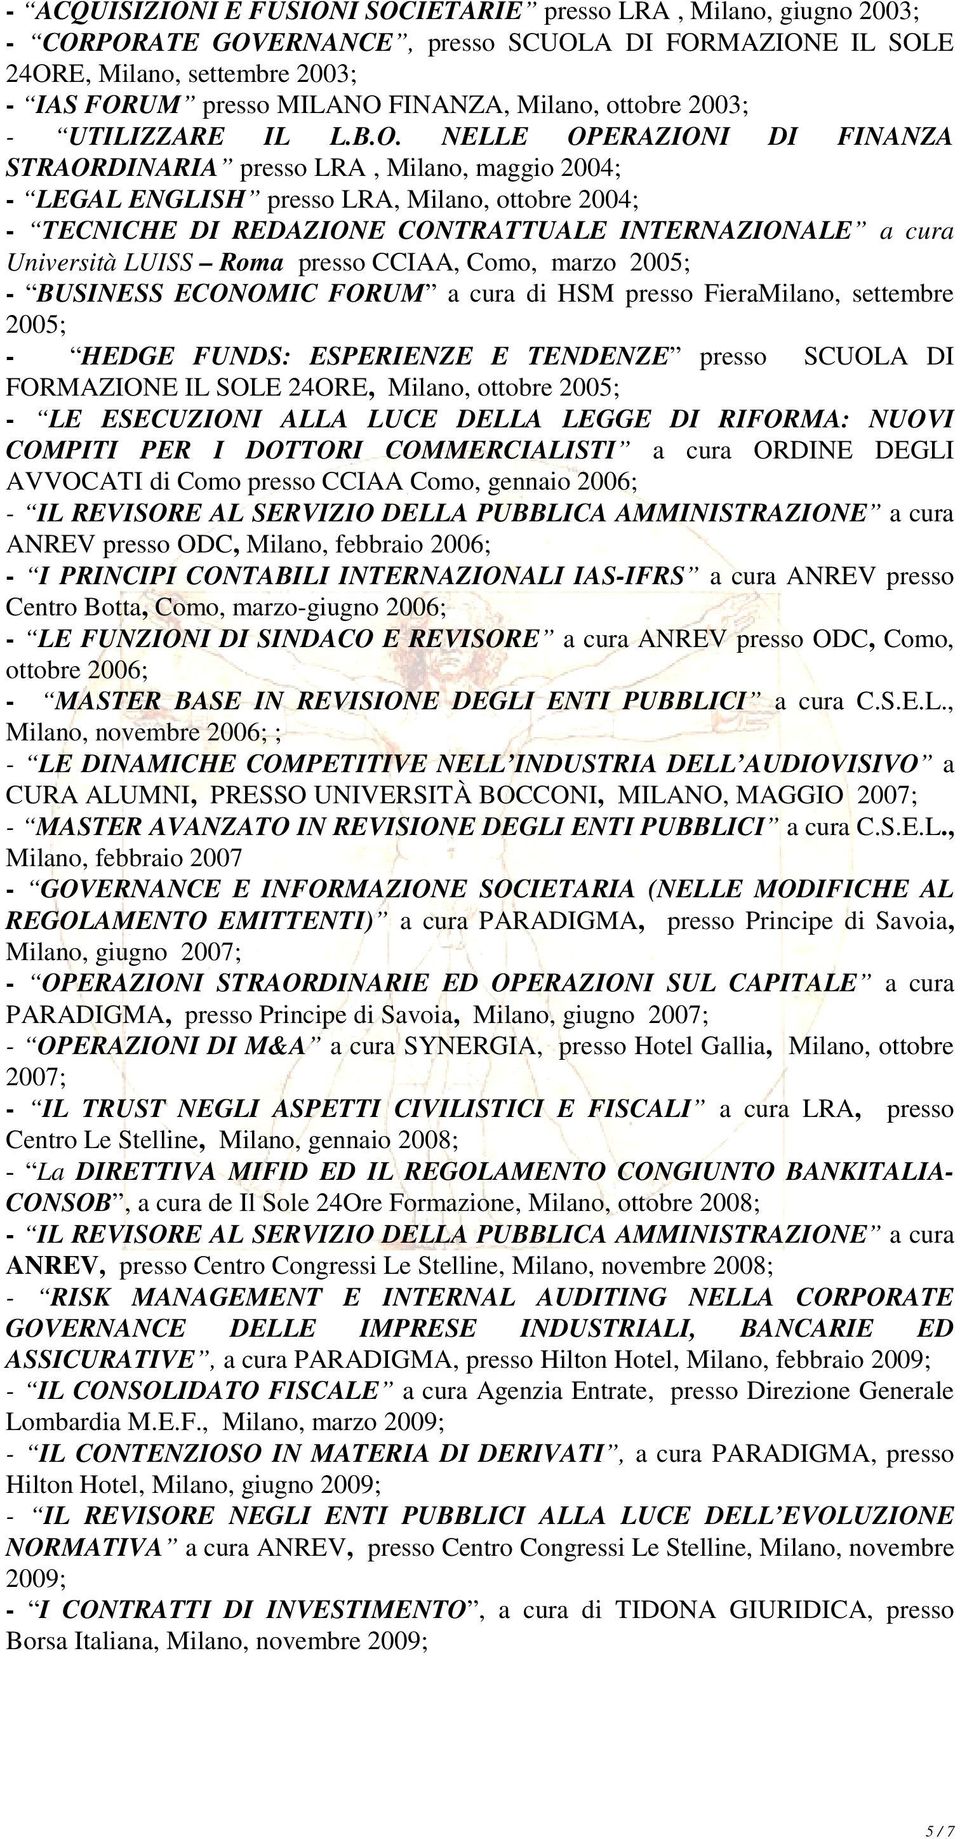 NELLE OPERAZIONI DI FINANZA STRAORDINARIA presso LRA, Milano, maggio 2004; - LEGAL ENGLISH presso LRA, Milano, ottobre 2004; - TECNICHE DI REDAZIONE CONTRATTUALE INTERNAZIONALE a cura Università